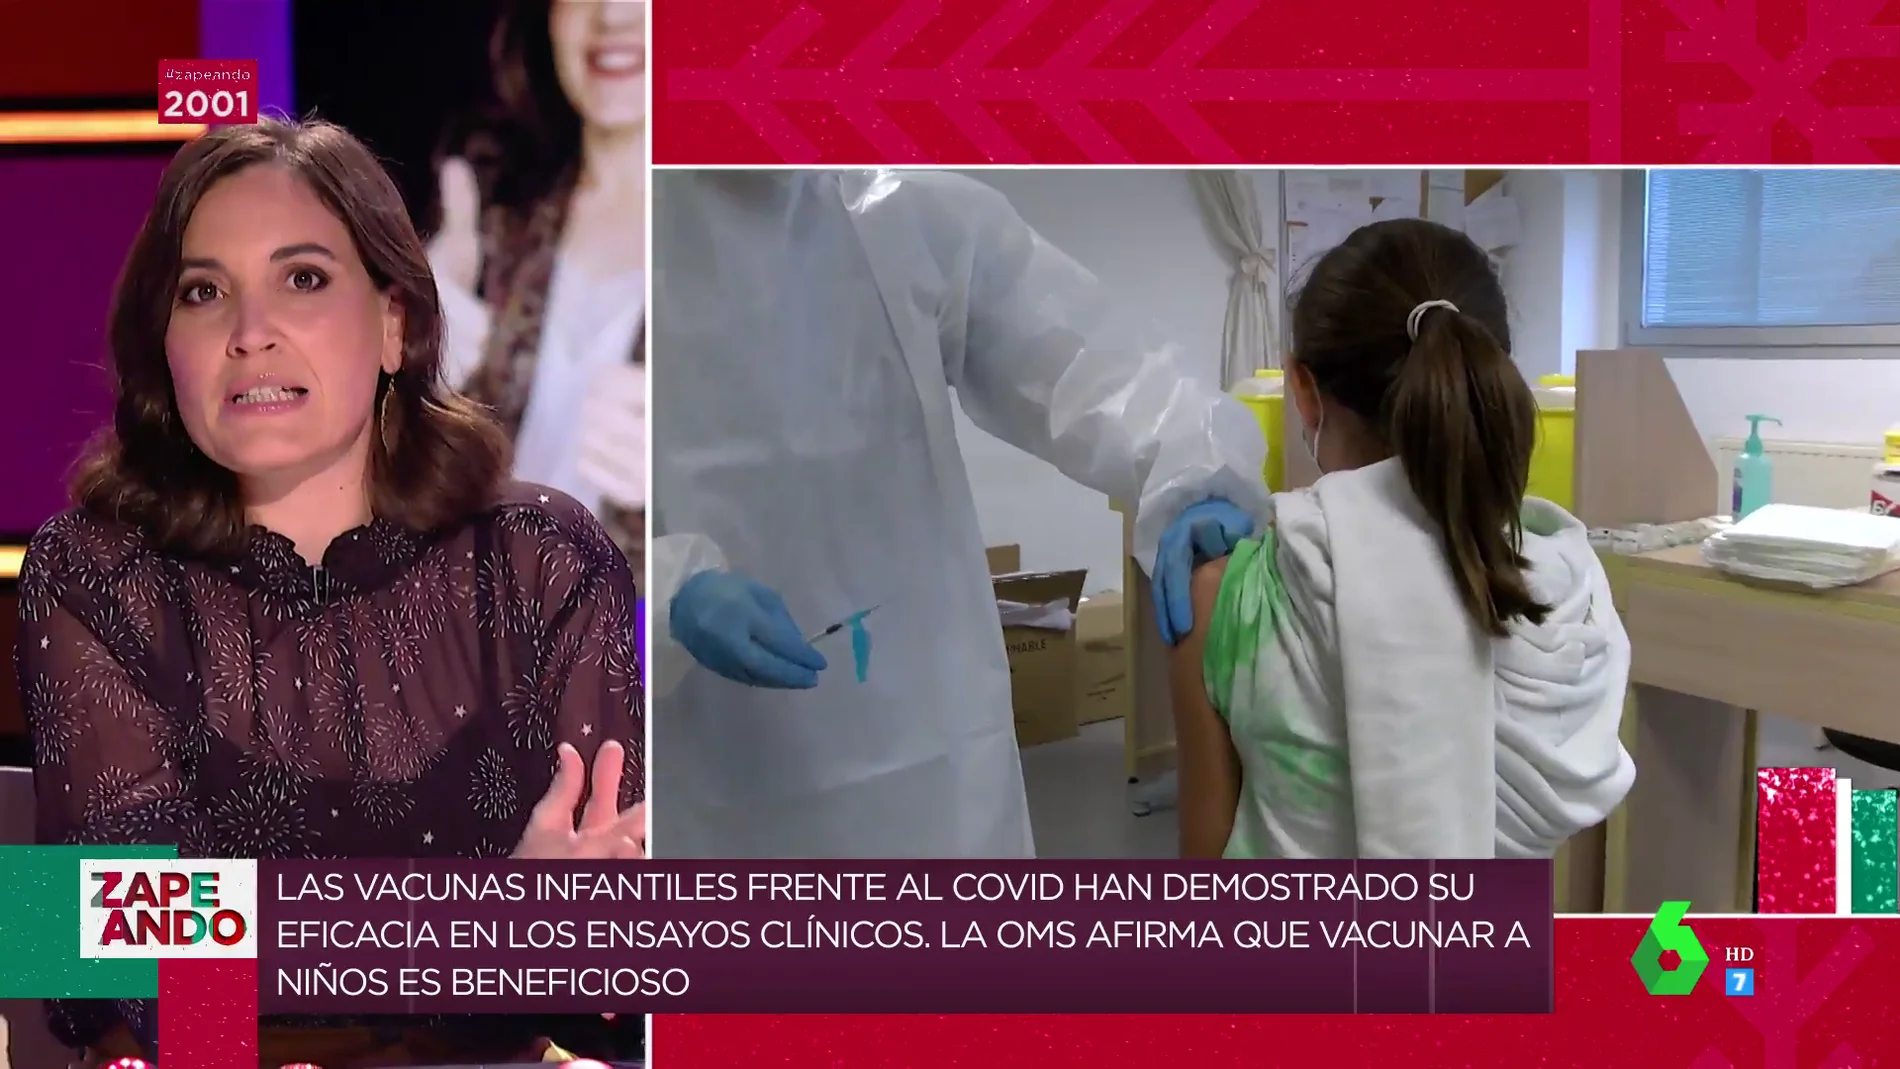 Boticaria García te explica por qué es importante vacunar a los niños y niñas: "Las vacunas son seguras y eficaces"